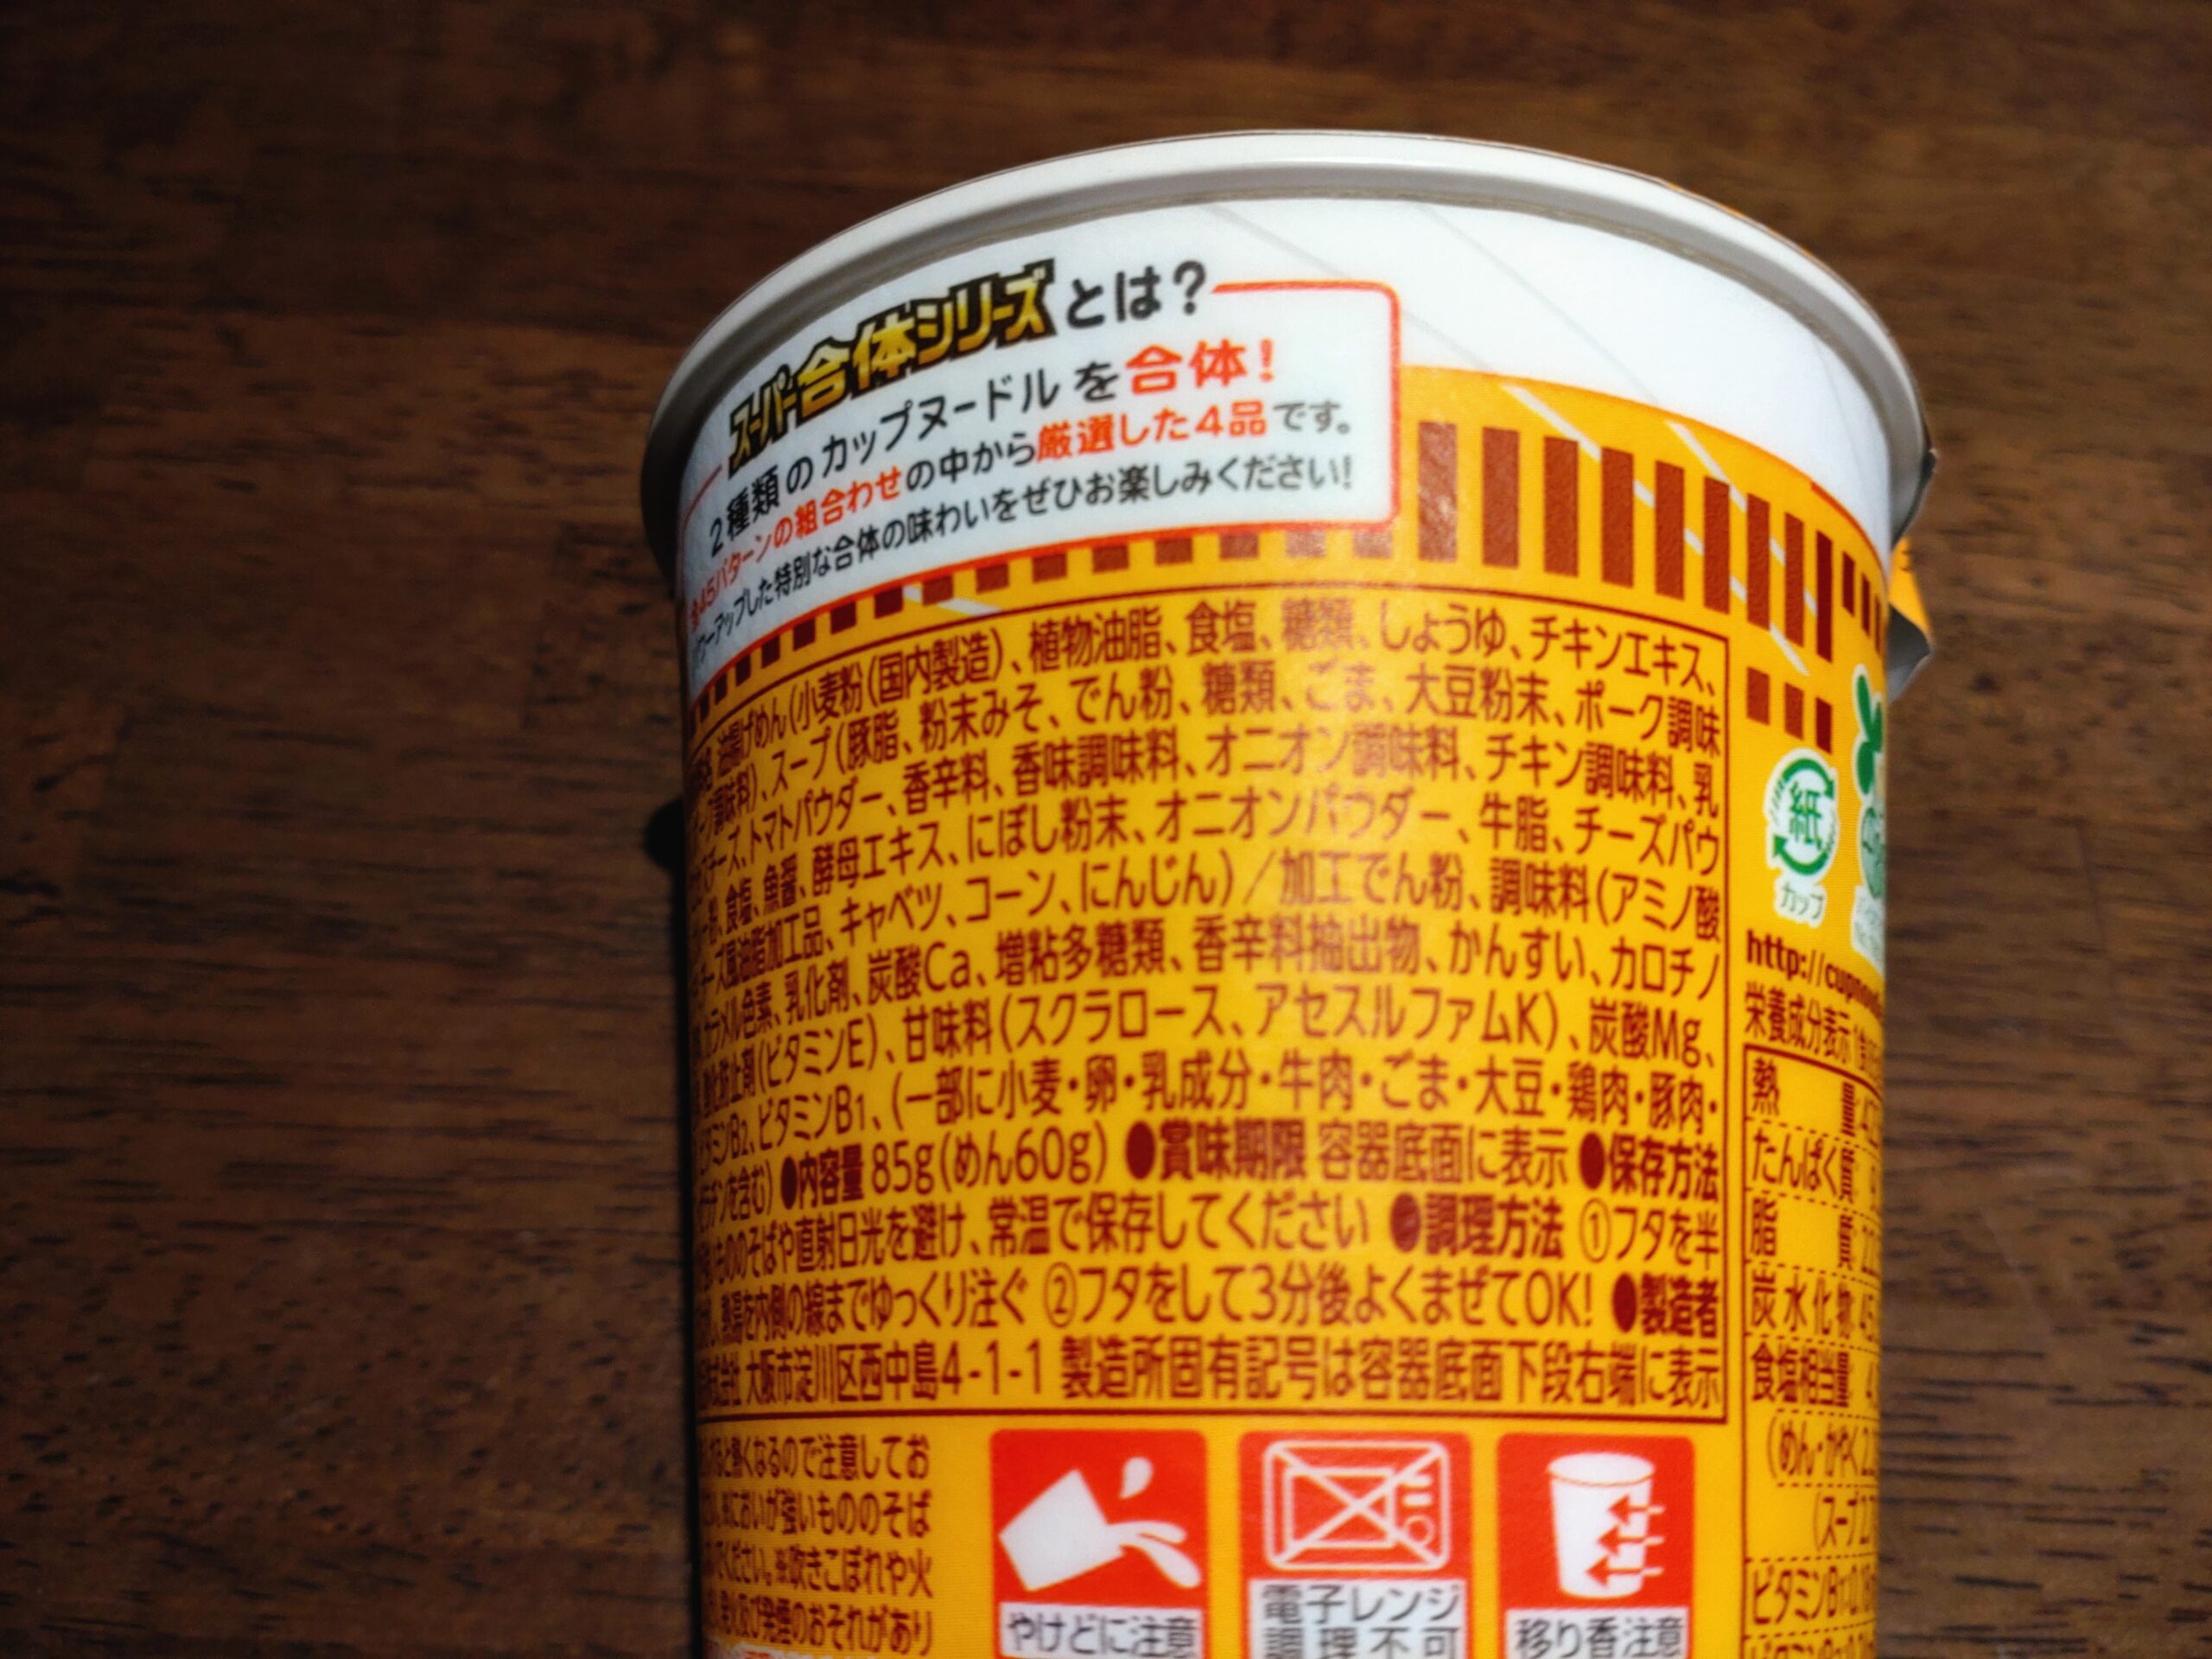 カップヌードル スーパー合体シリーズ 欧風チーズカレー&味噌の原材料名と内容量